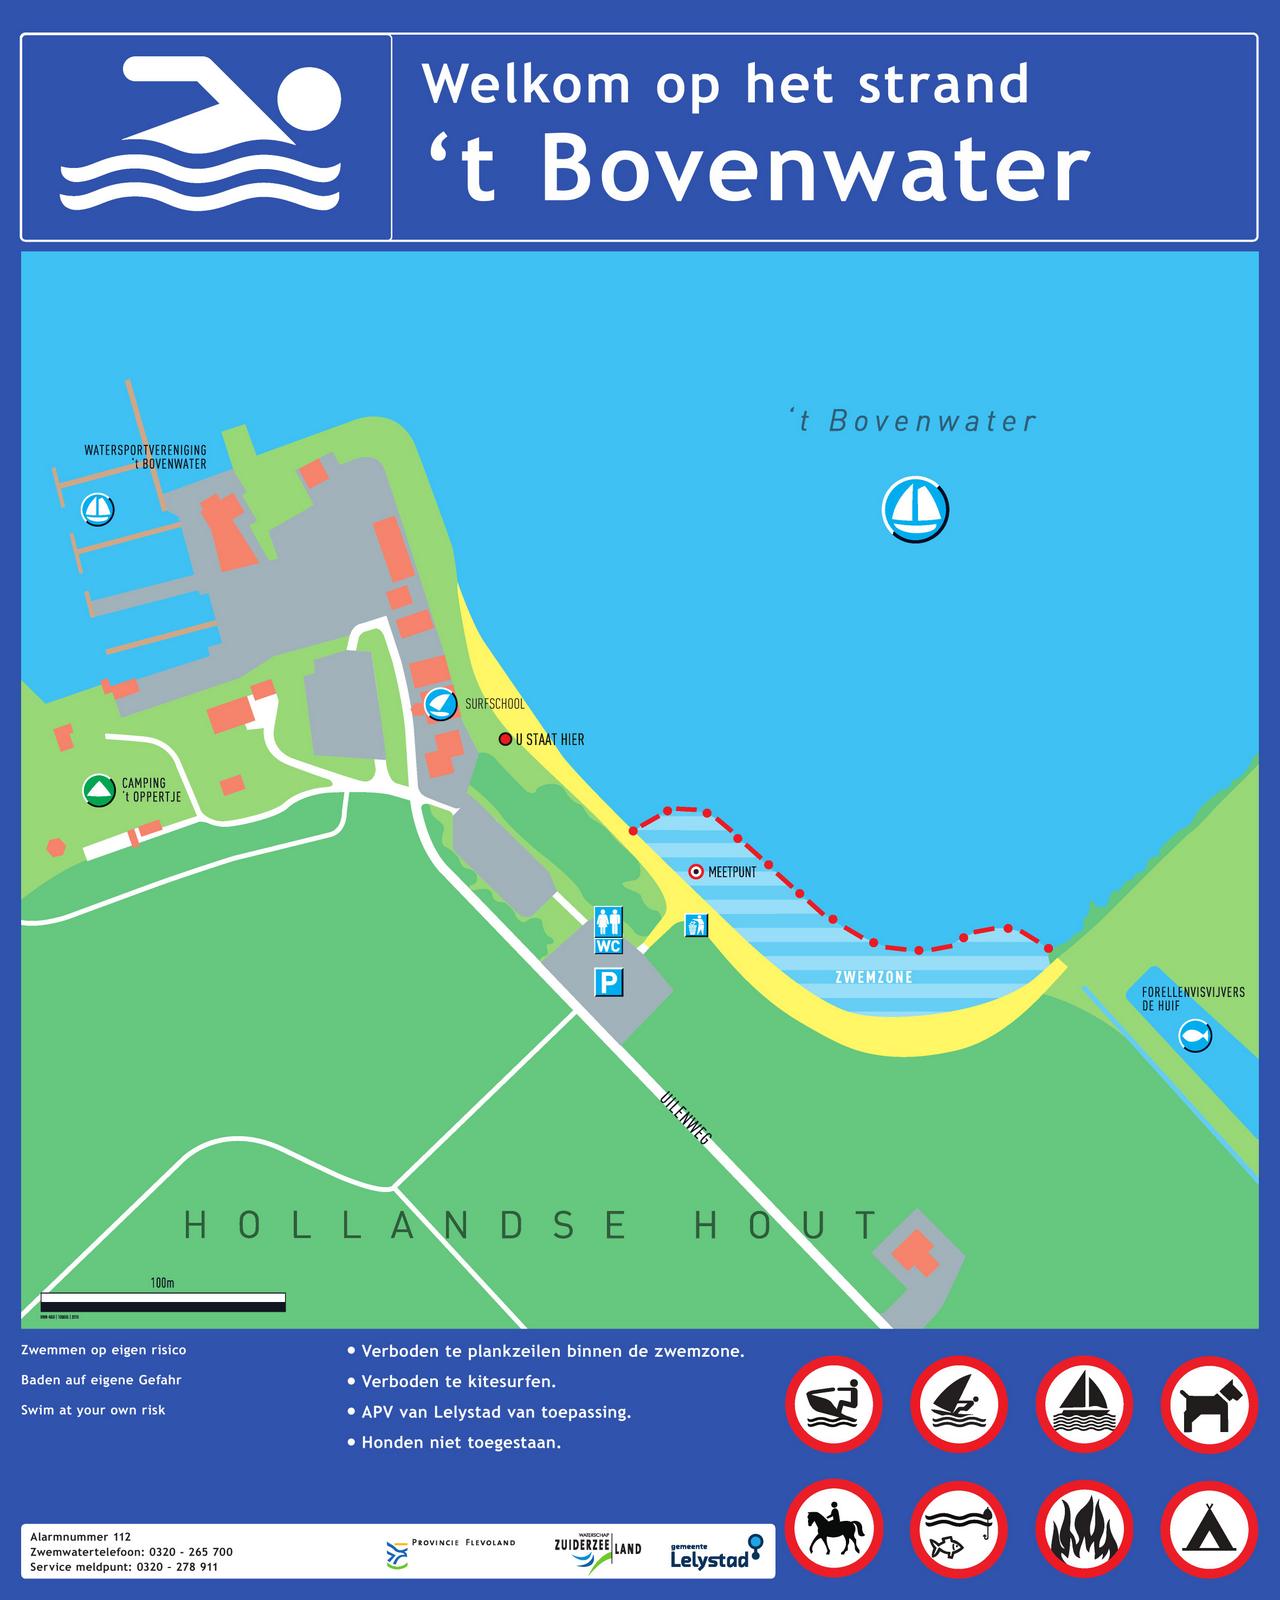 Het informatiebord bij zwemlocatie 't Bovenwater